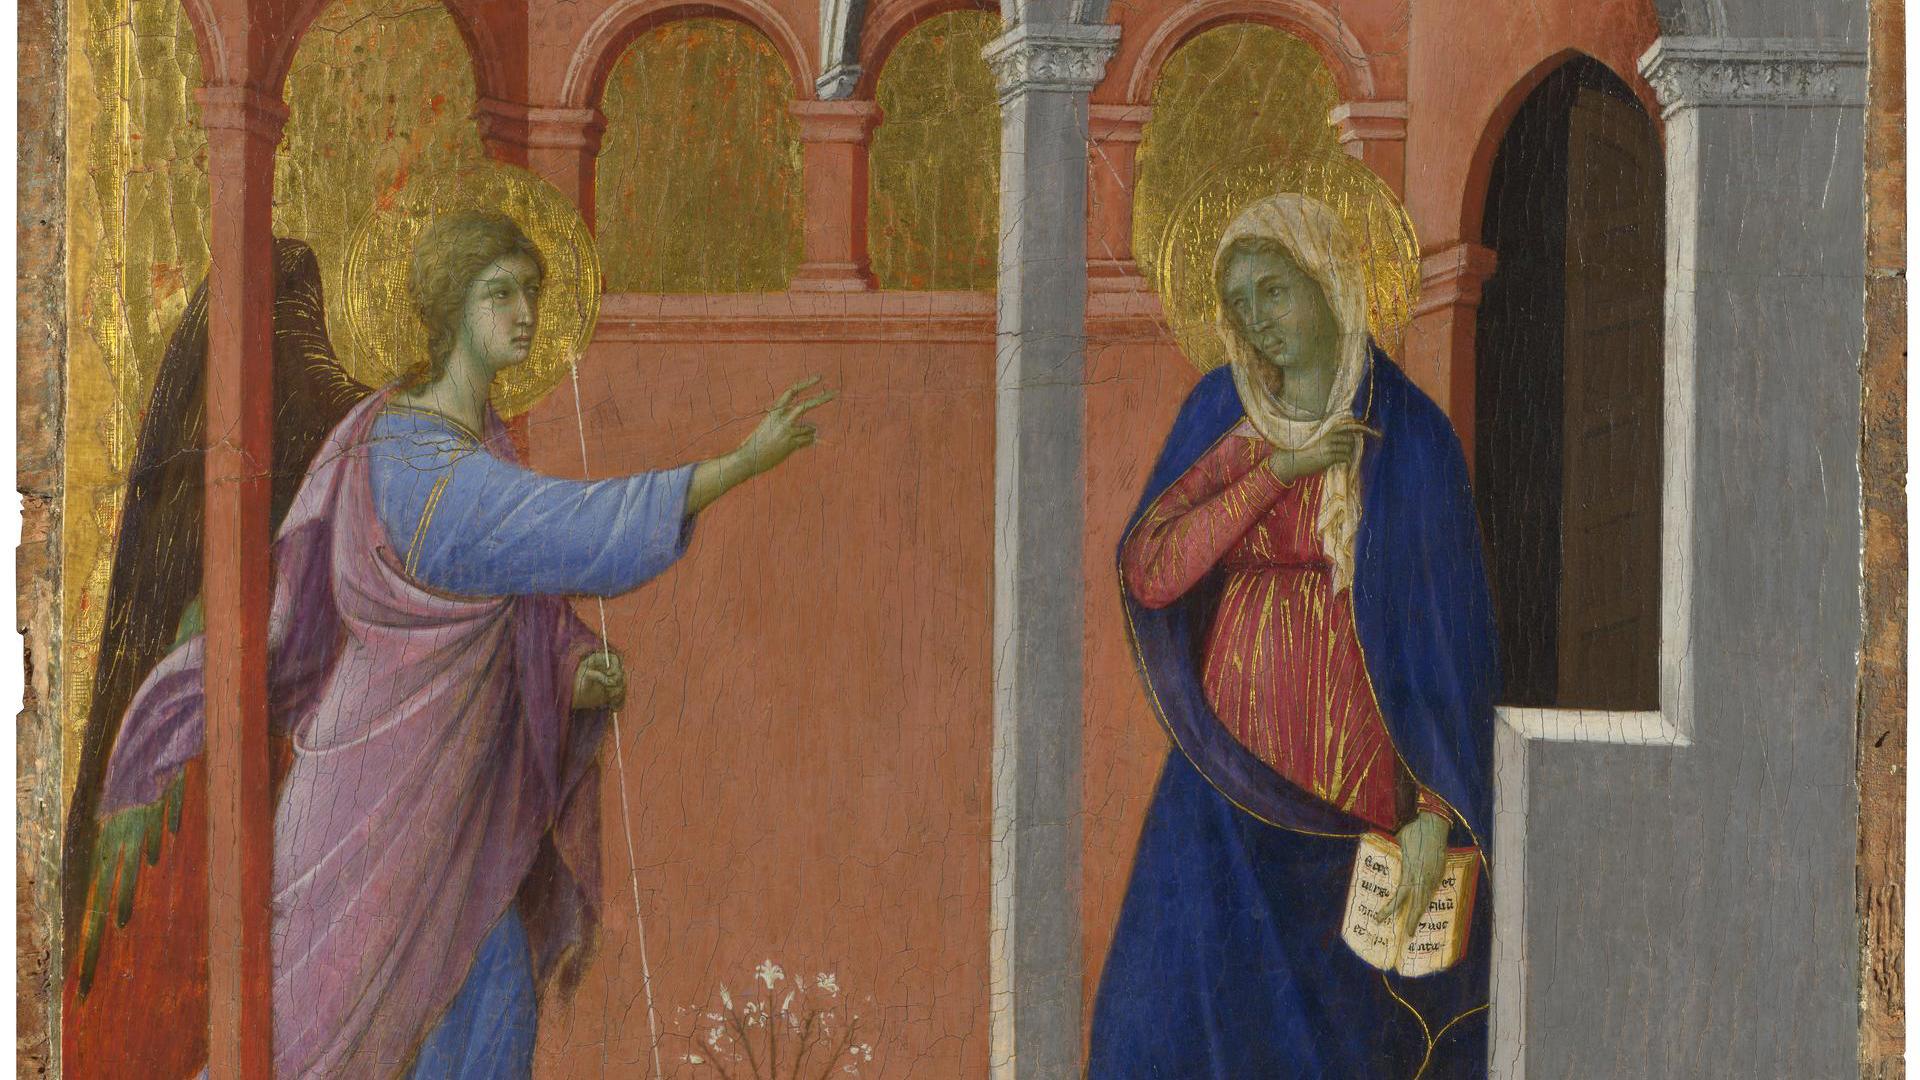 The Annunciation by Duccio